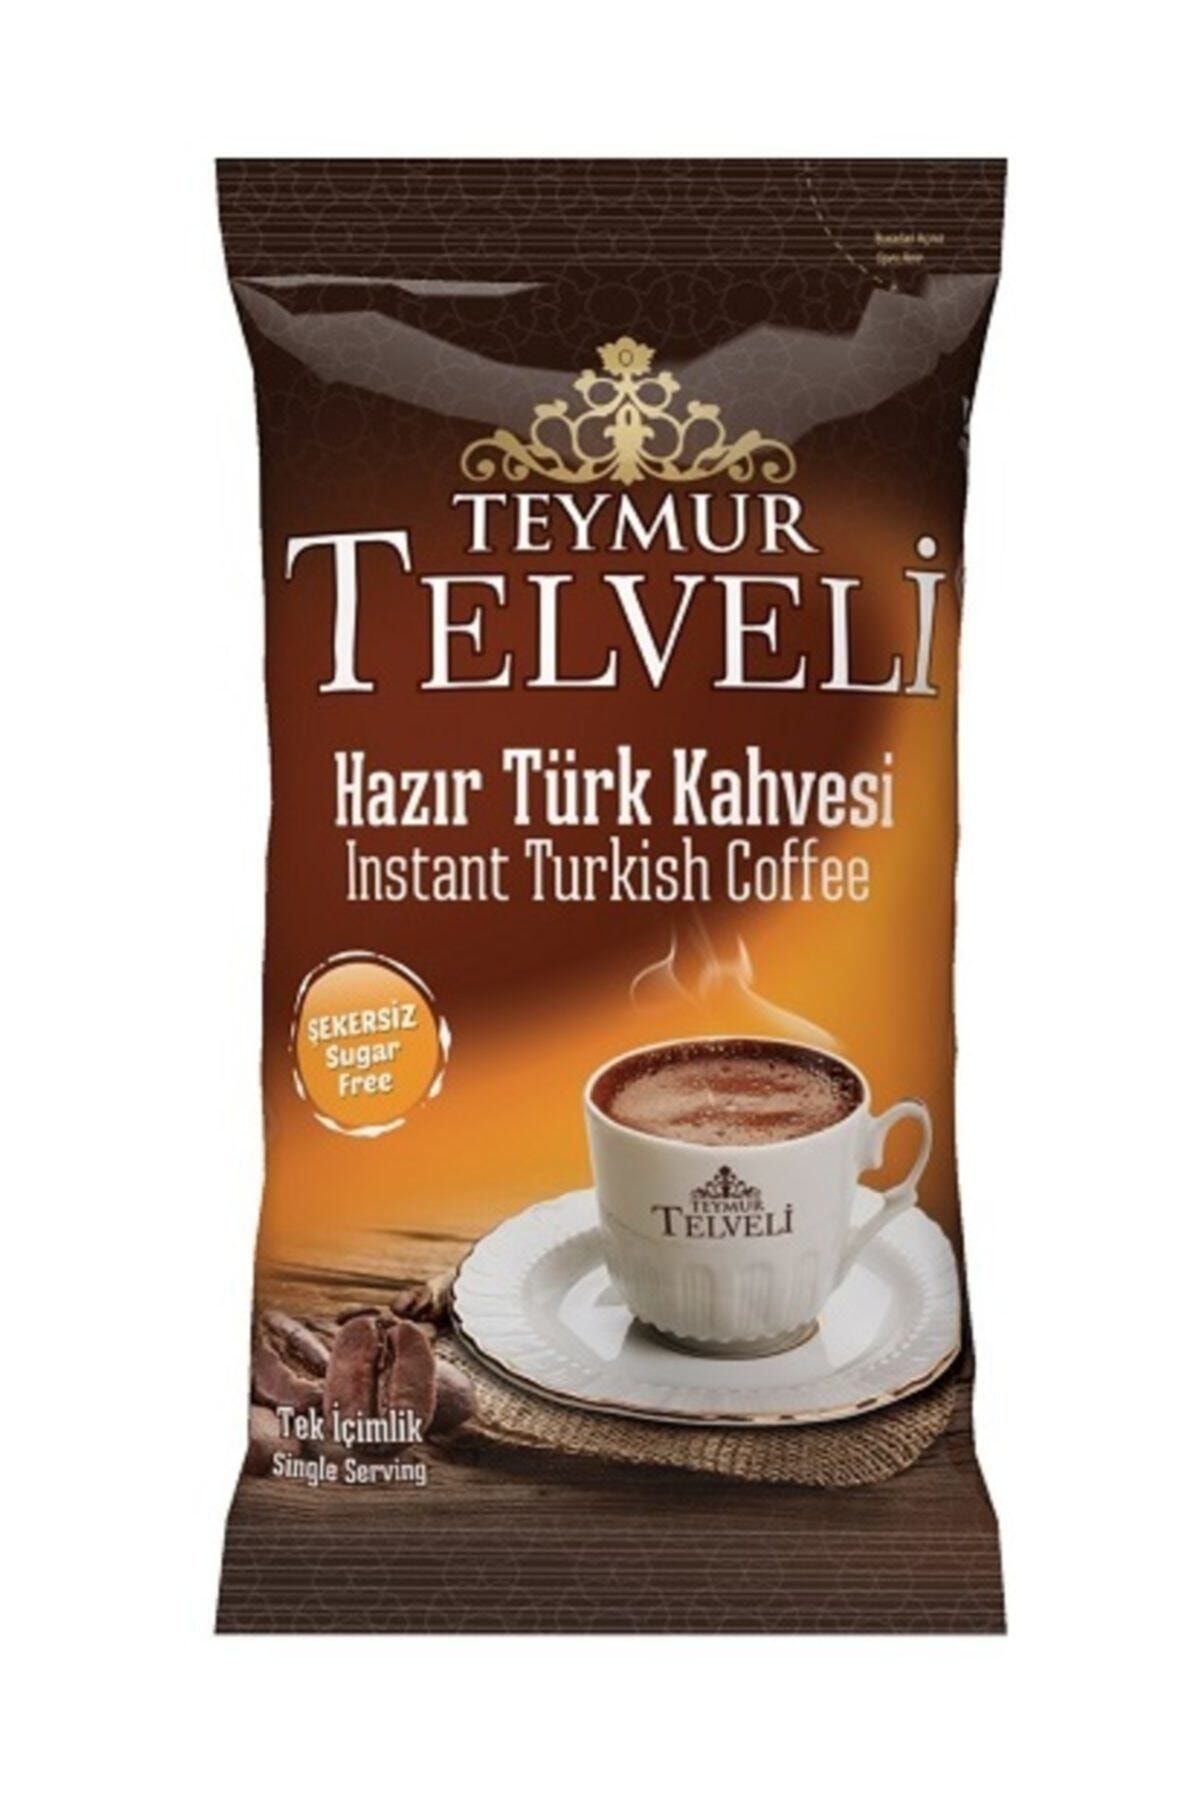 Teymur Telveli Hazır Türk Kahvesi Şekersiz Ofis Seti 10'lu Kutu 7 gr